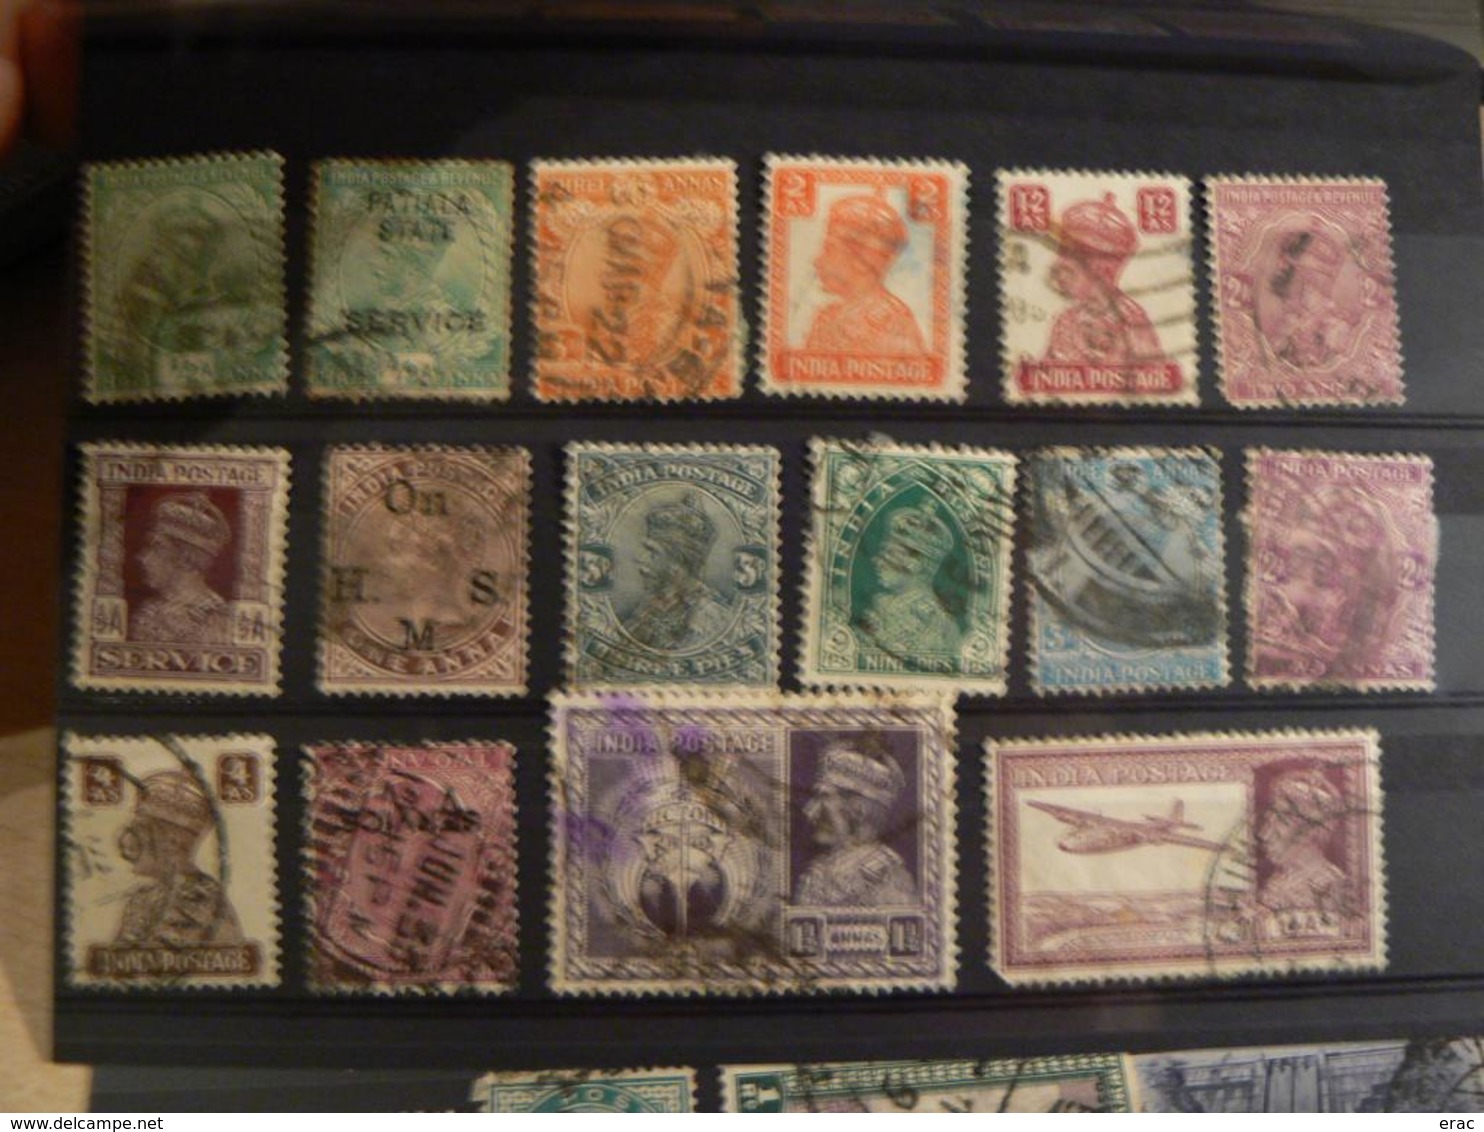 INDE - Lot de timbres anciens et plus récents